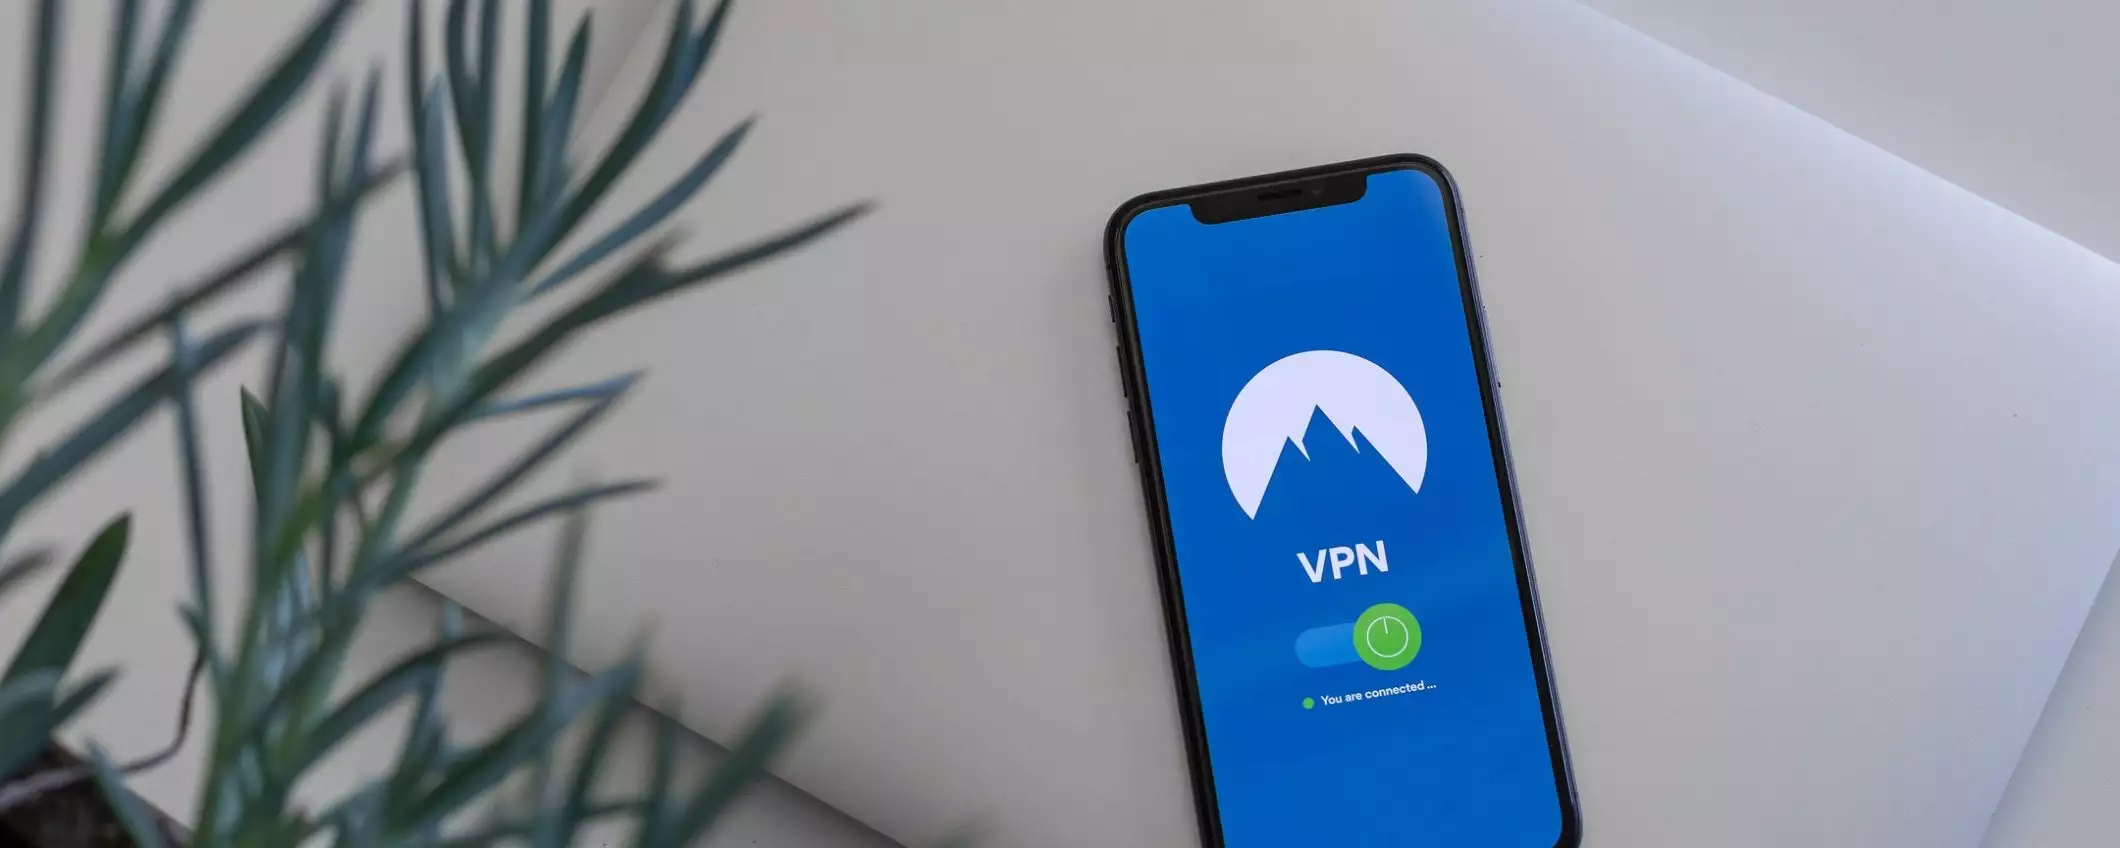 Guida alle VPN: cos'è, come funziona e come scegliere la migliore